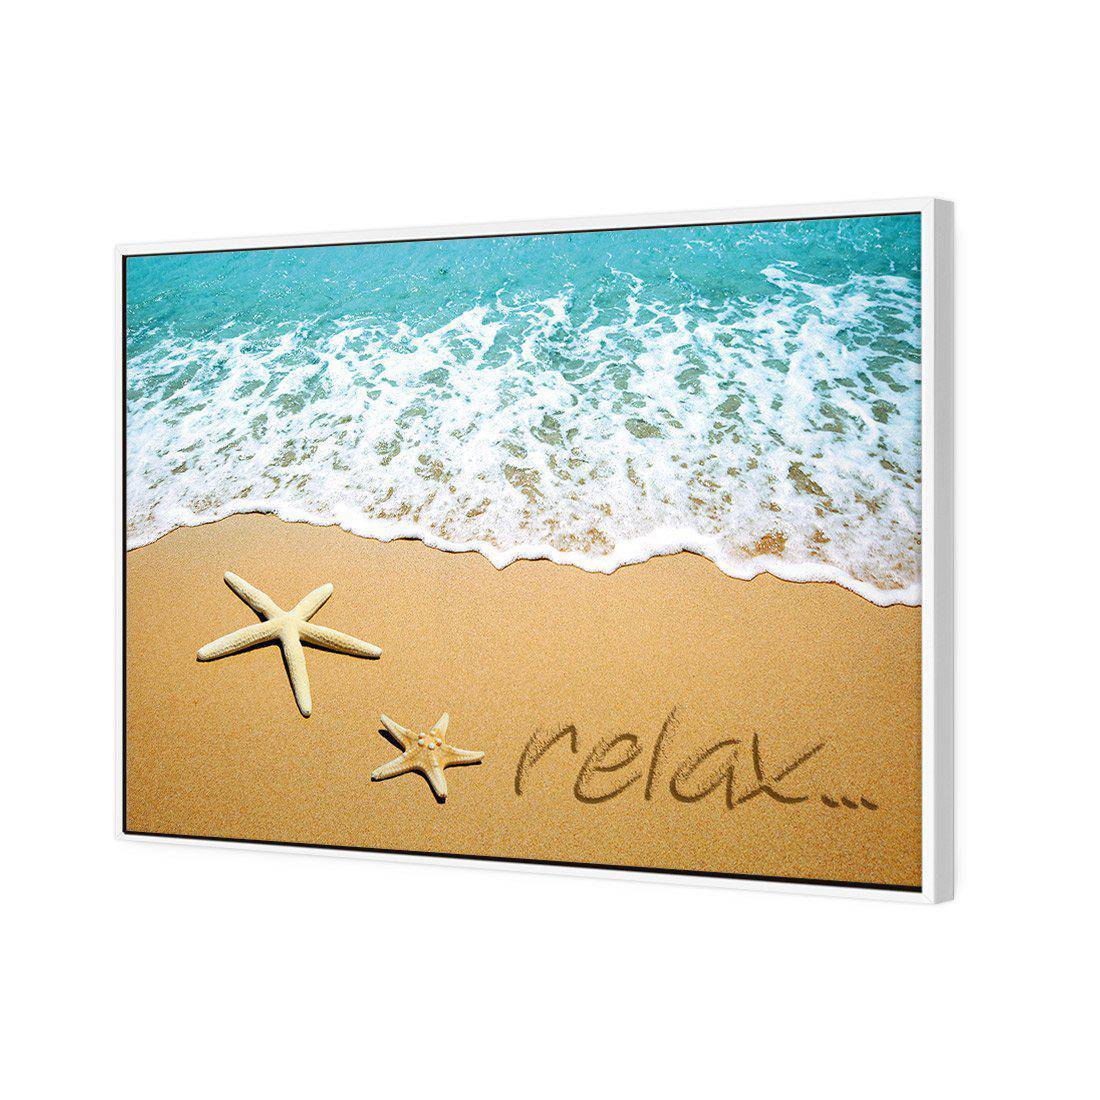 Relax Inspire Canvas Art-Canvas-Wall Art Designs-45x30cm-Canvas - White Frame-Wall Art Designs